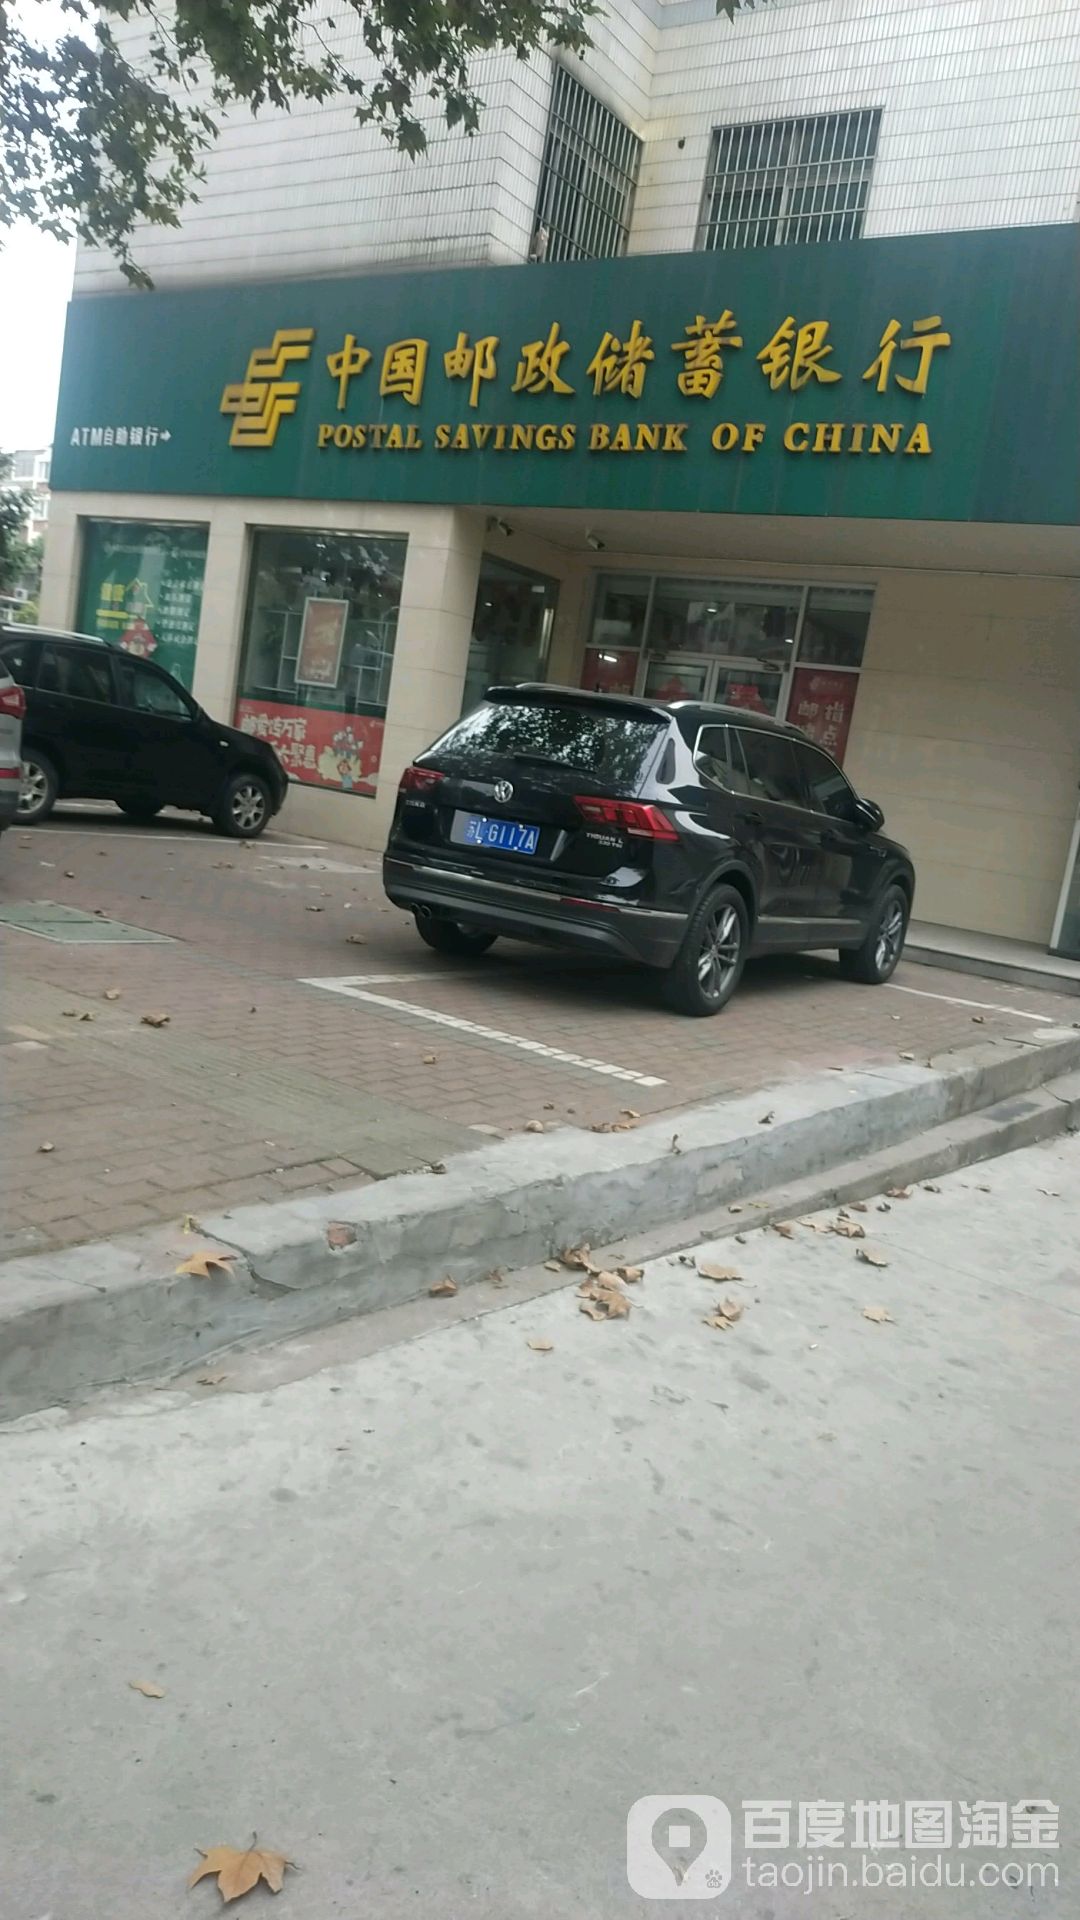 中國郵政儲蓄銀行ATM(練湖郵政儲蓄所)